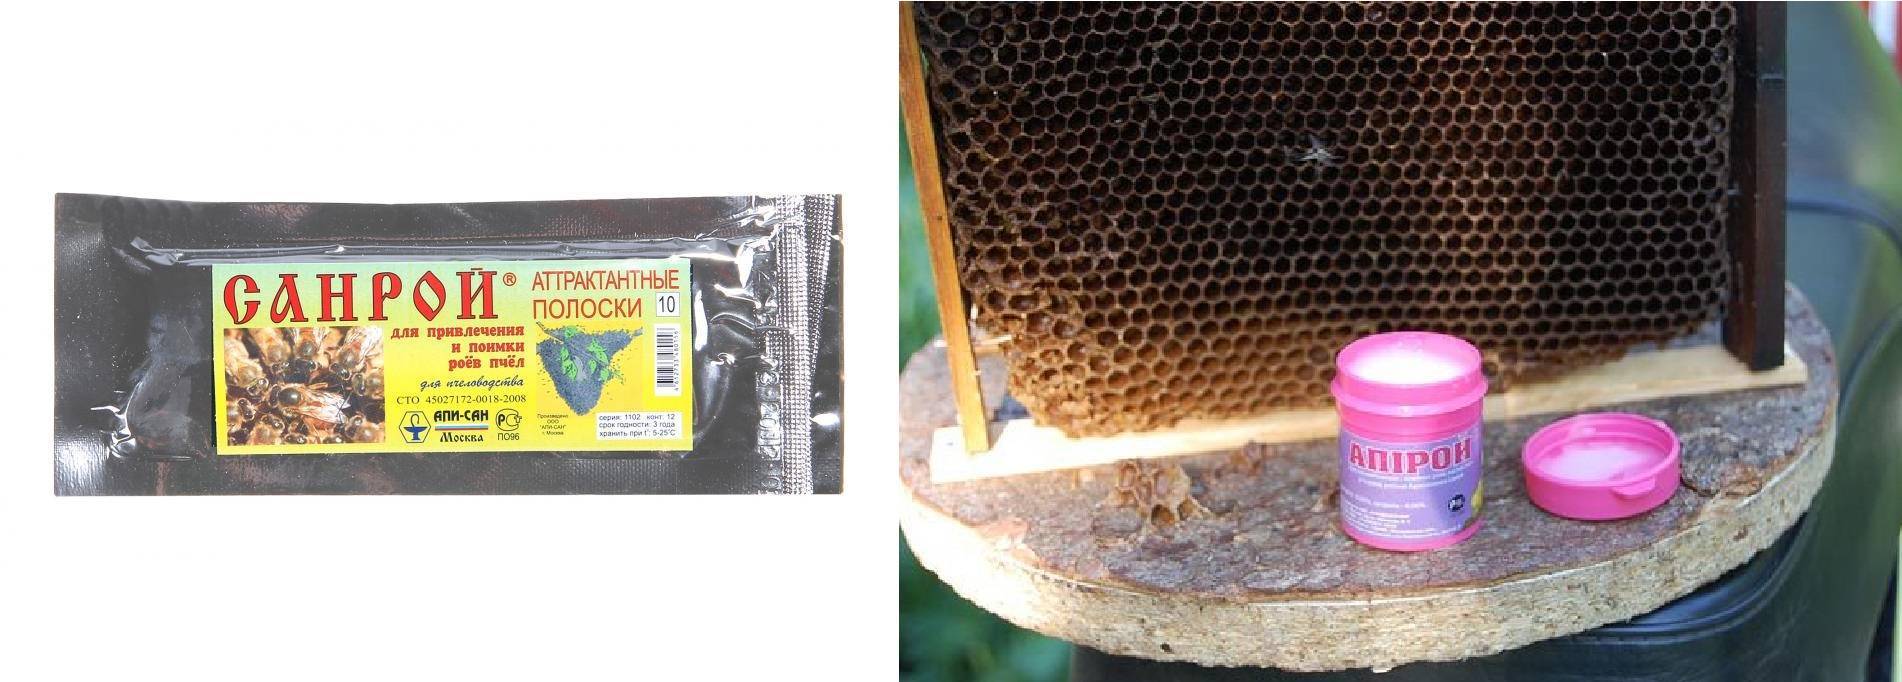 Омшаник для пчел своими руками: что это такое, как построить, пошаговая инструкция - omvesti.com